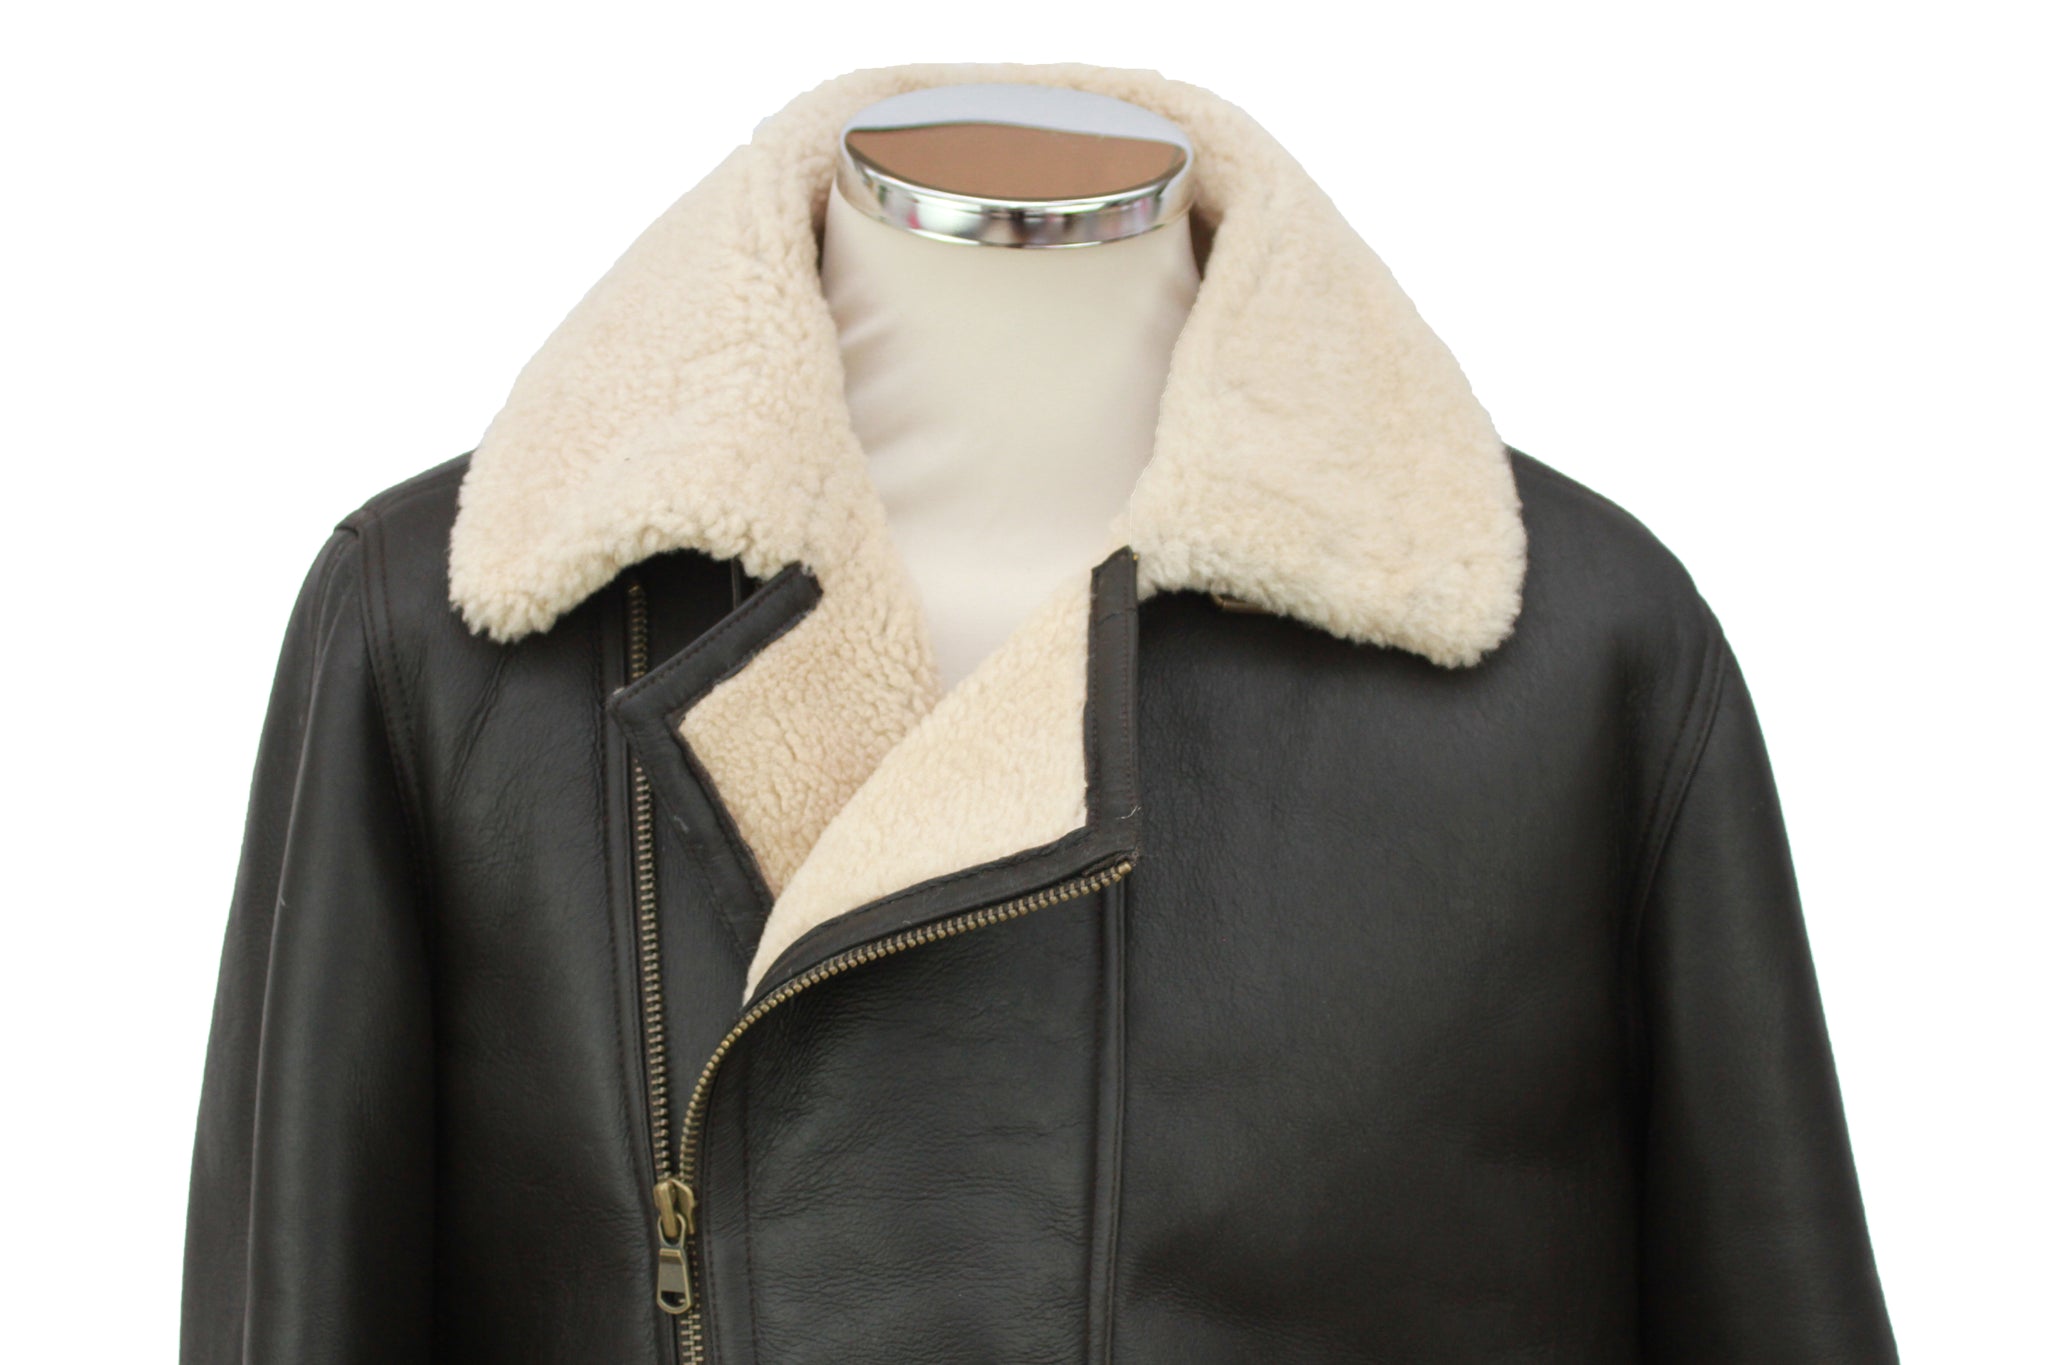 Men's Classic Cross Zip Sheepskin Jacket in Dark Brown Nappa